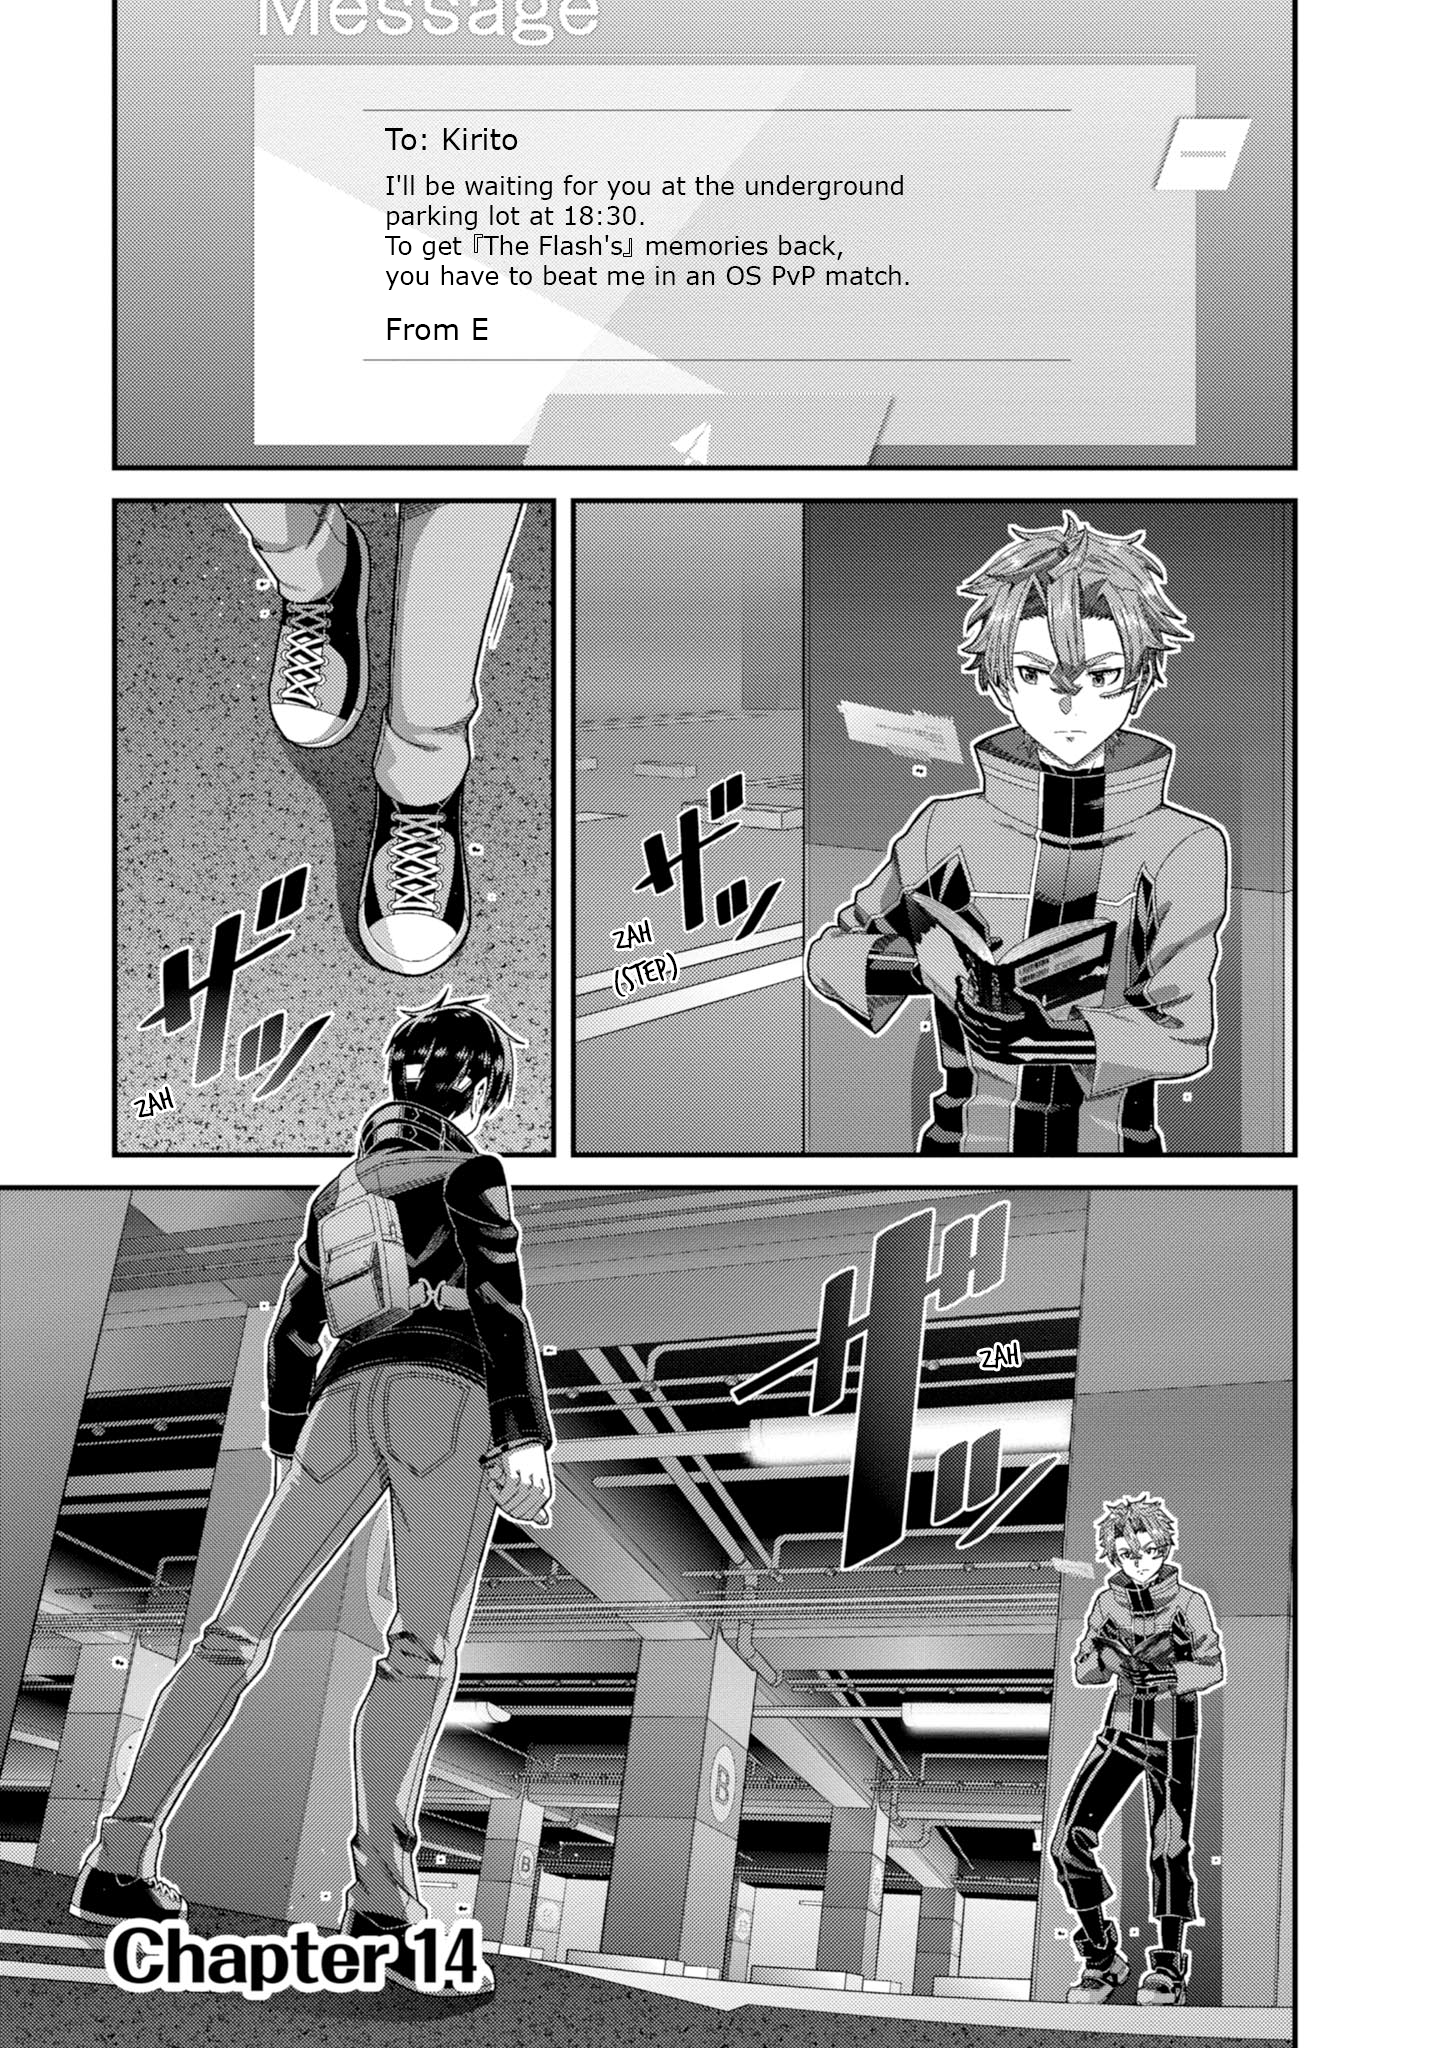 Sword Art Online (Novel) - Page 1